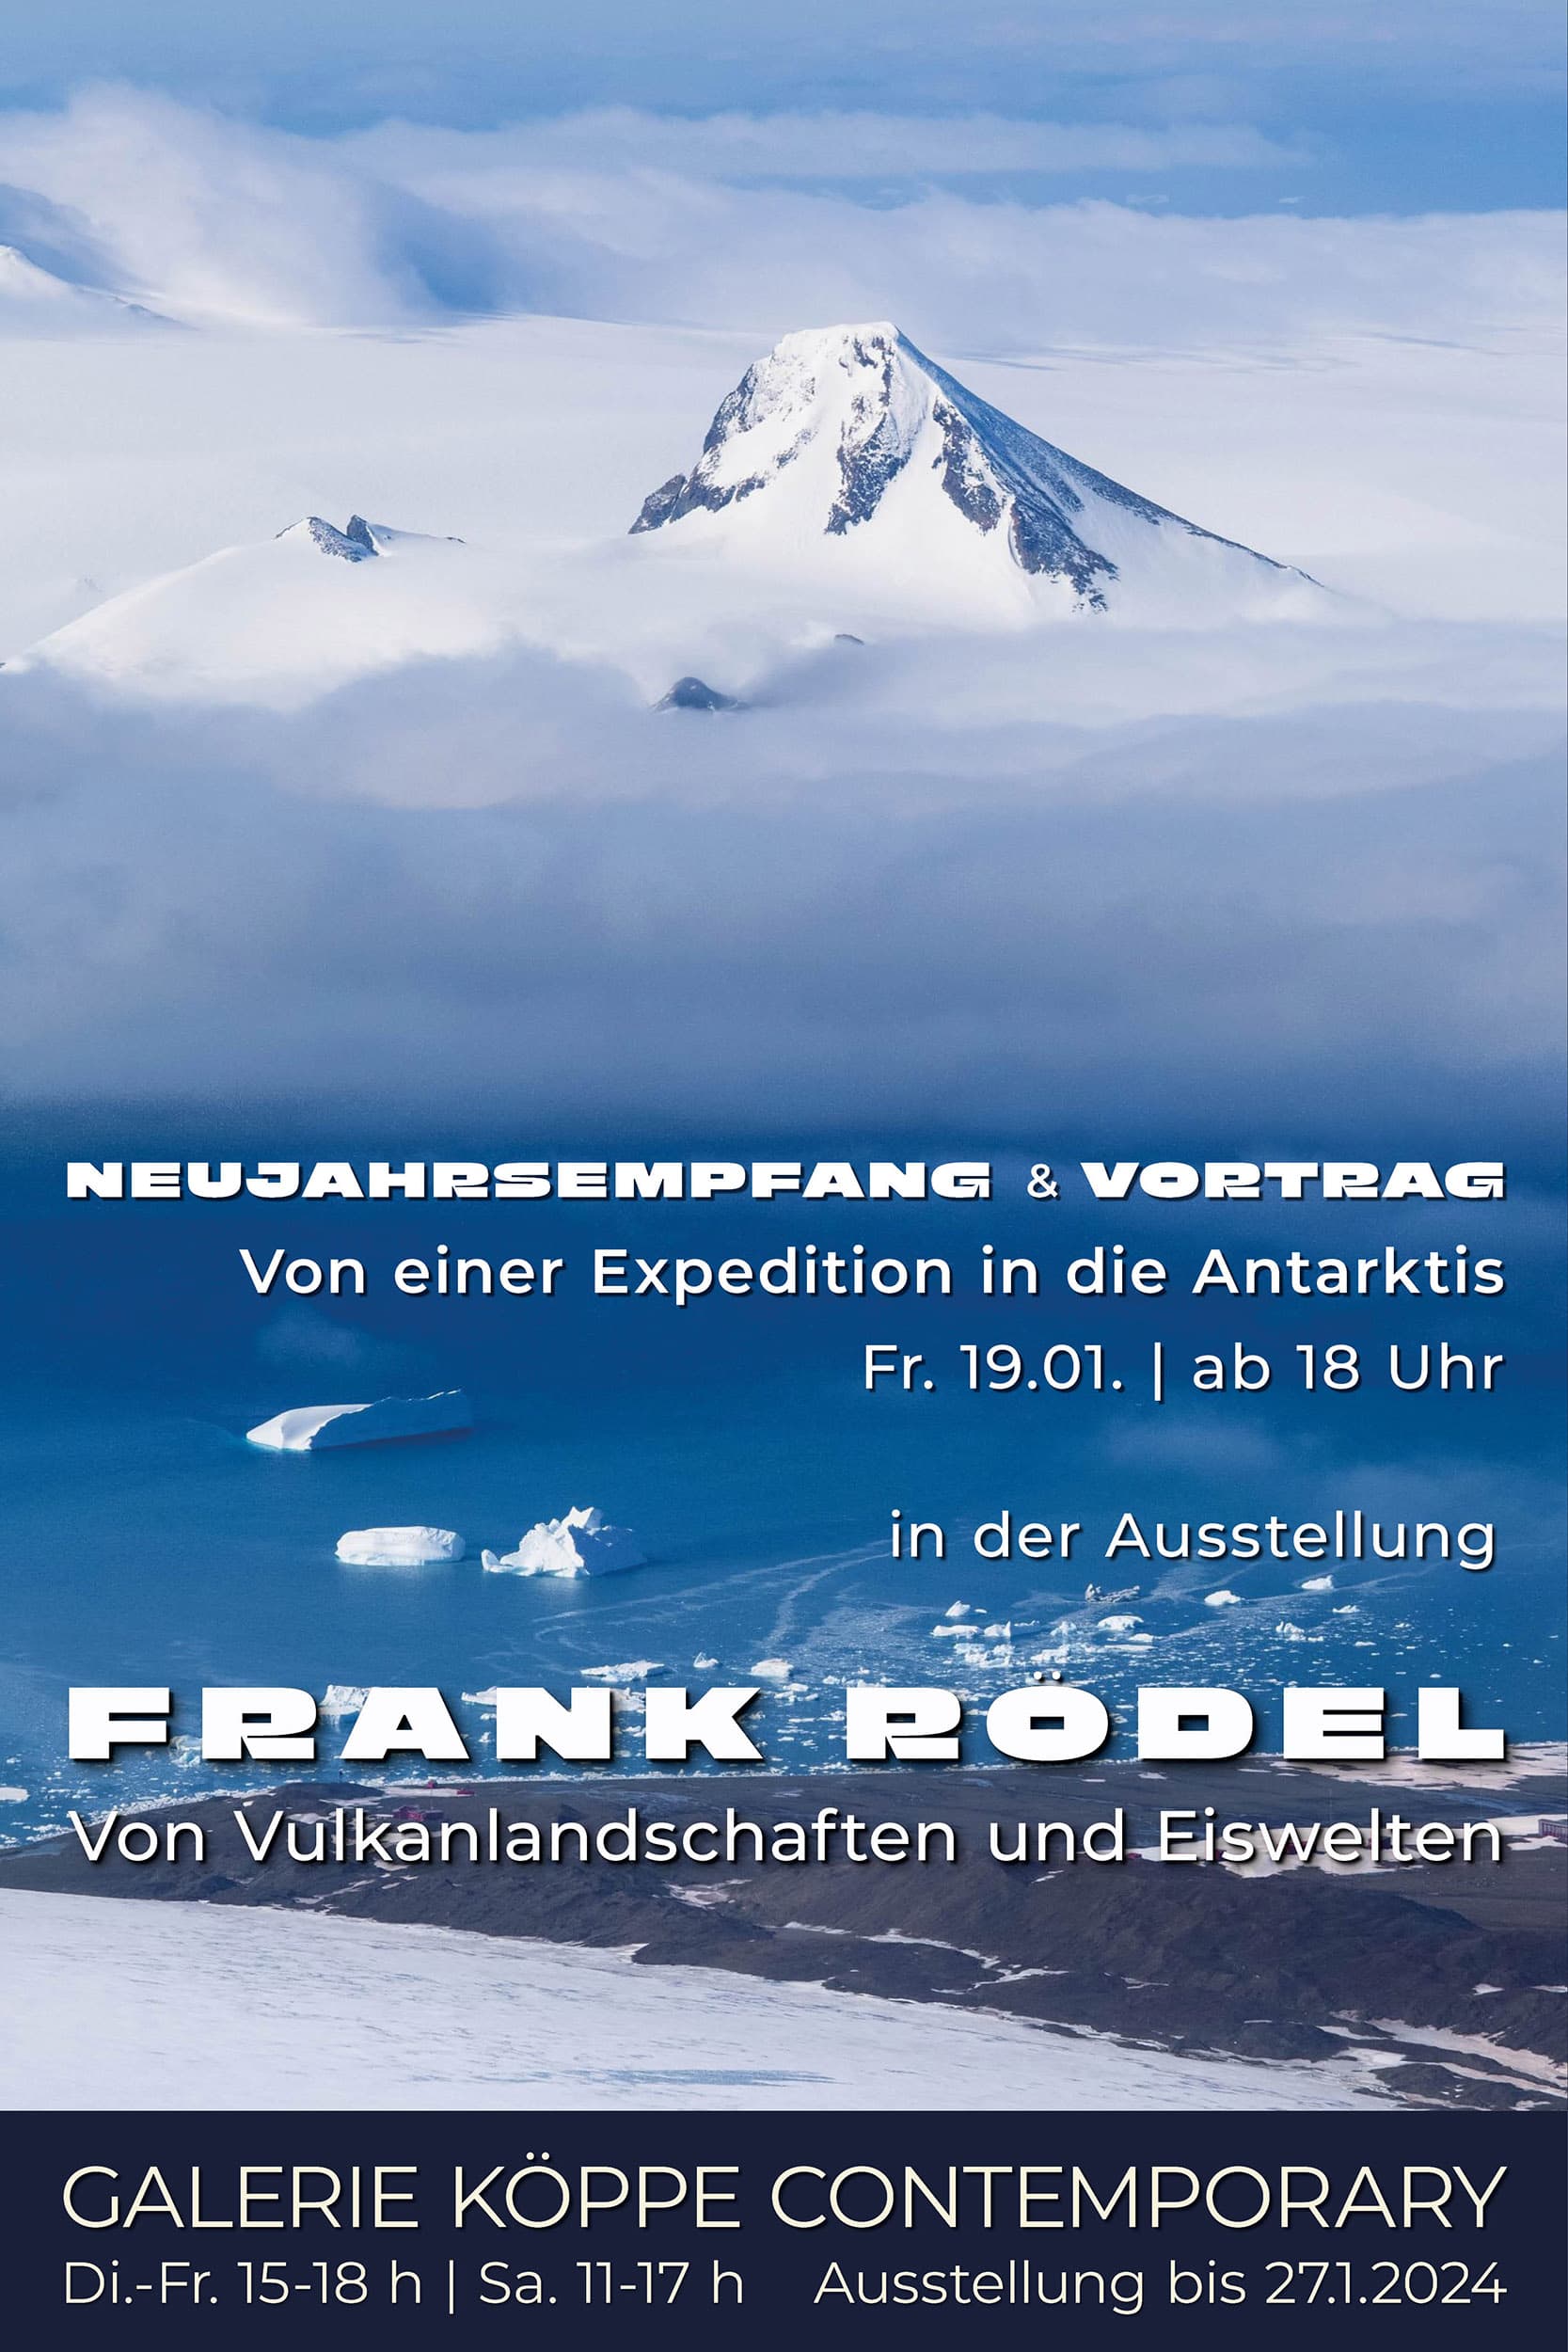 FRANK RÖDEL – Vortrag „Von einer Expedition in die Antarktis“ am 19. Januar 2024 um 18:30 Uhr